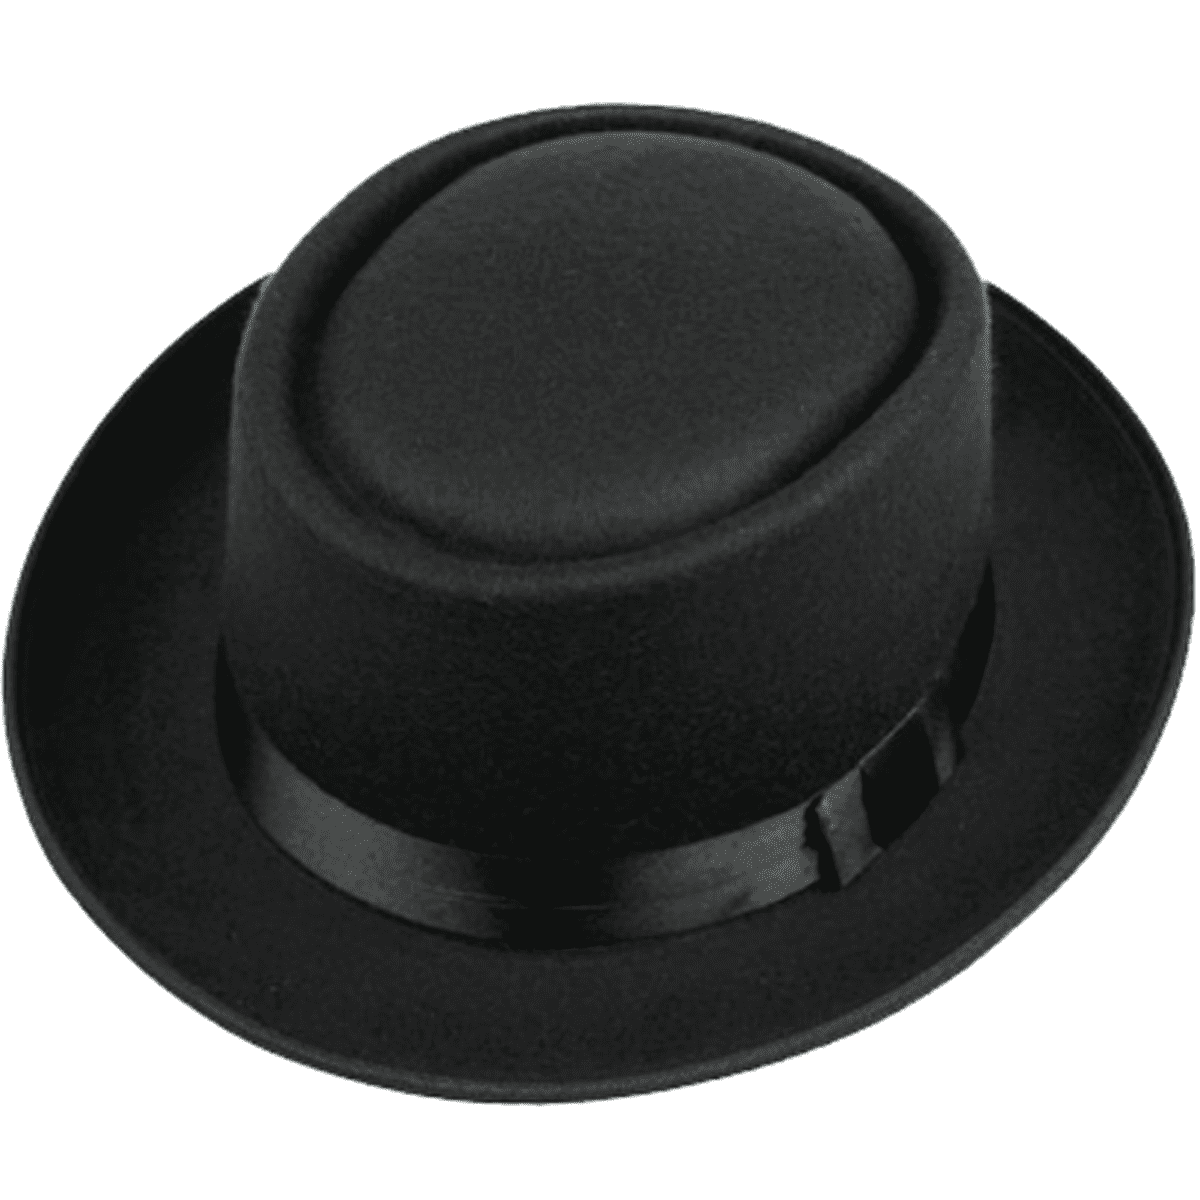 Pork Pie Hats for Men/Women 100% Wool Felt Hat Stout Porkpie Breaking Bad Hat Flat Top Fedora Hats Boater Derby Crushable